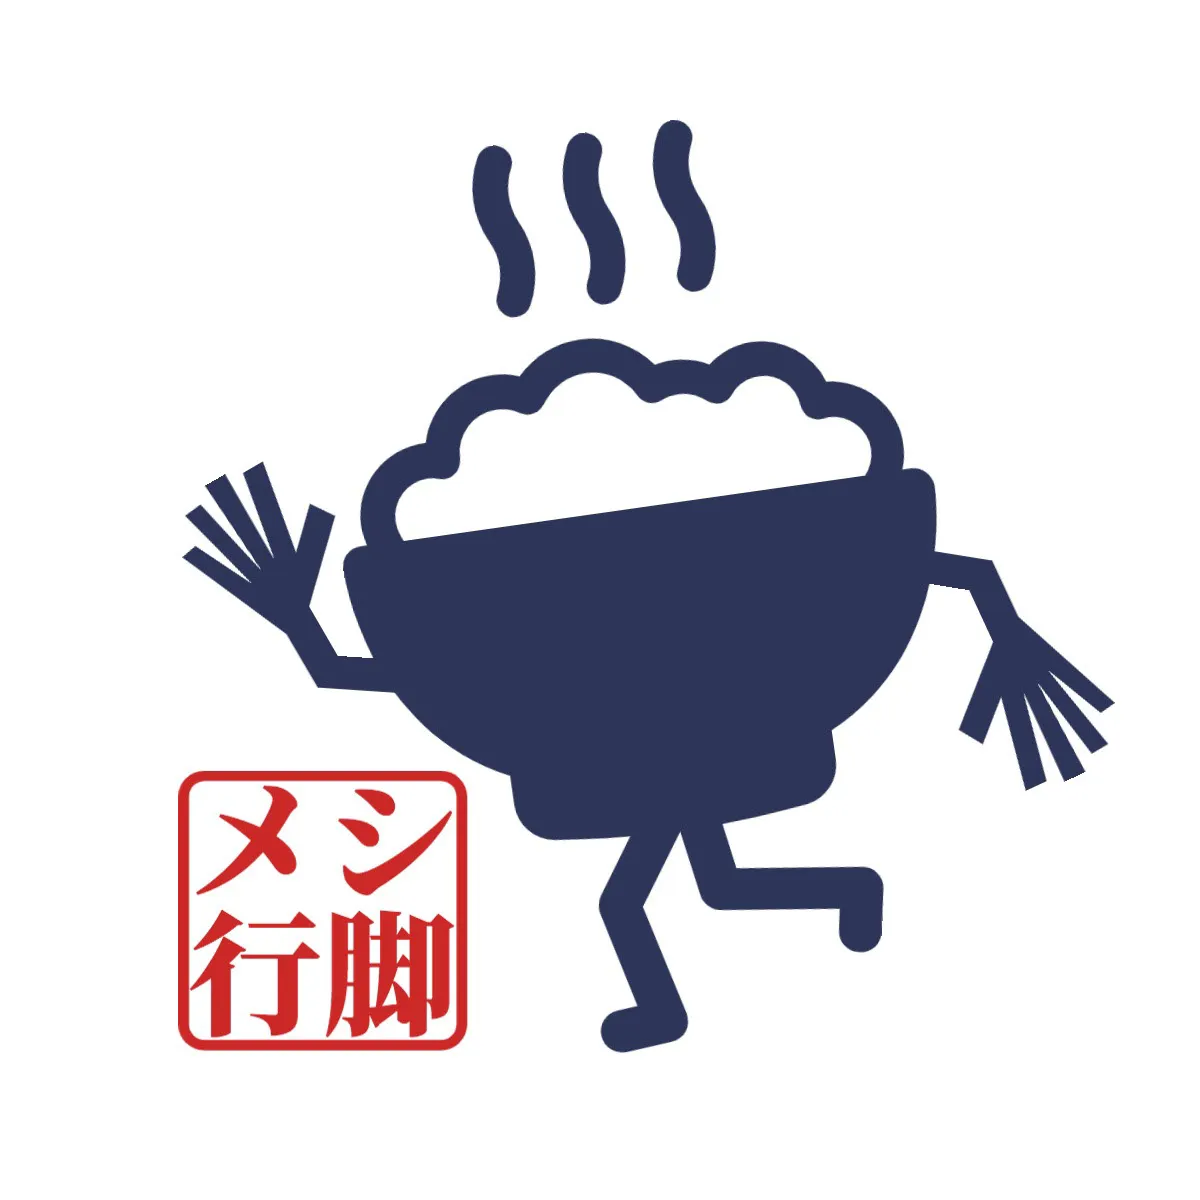 Walking rice youtube logo